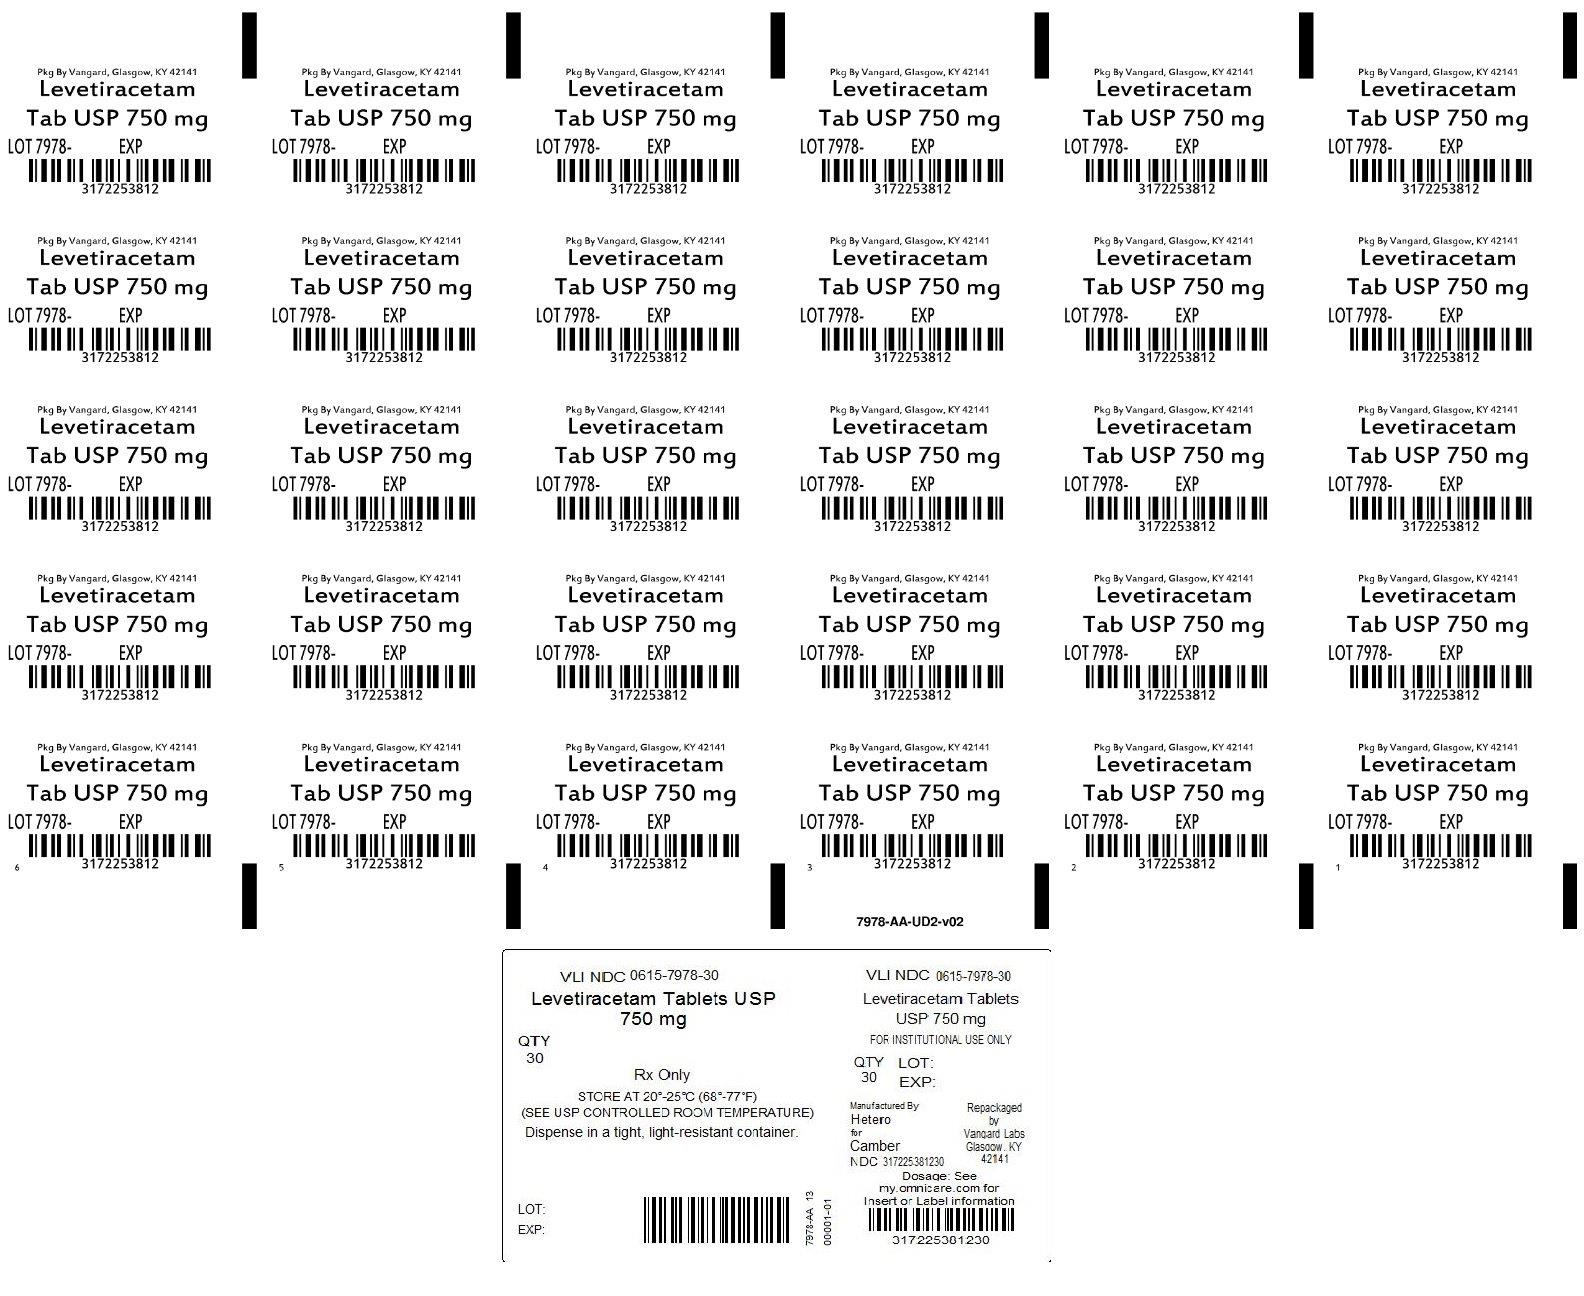 Principal Display Panel - Levetiracetam 750mg Tab unit dose label